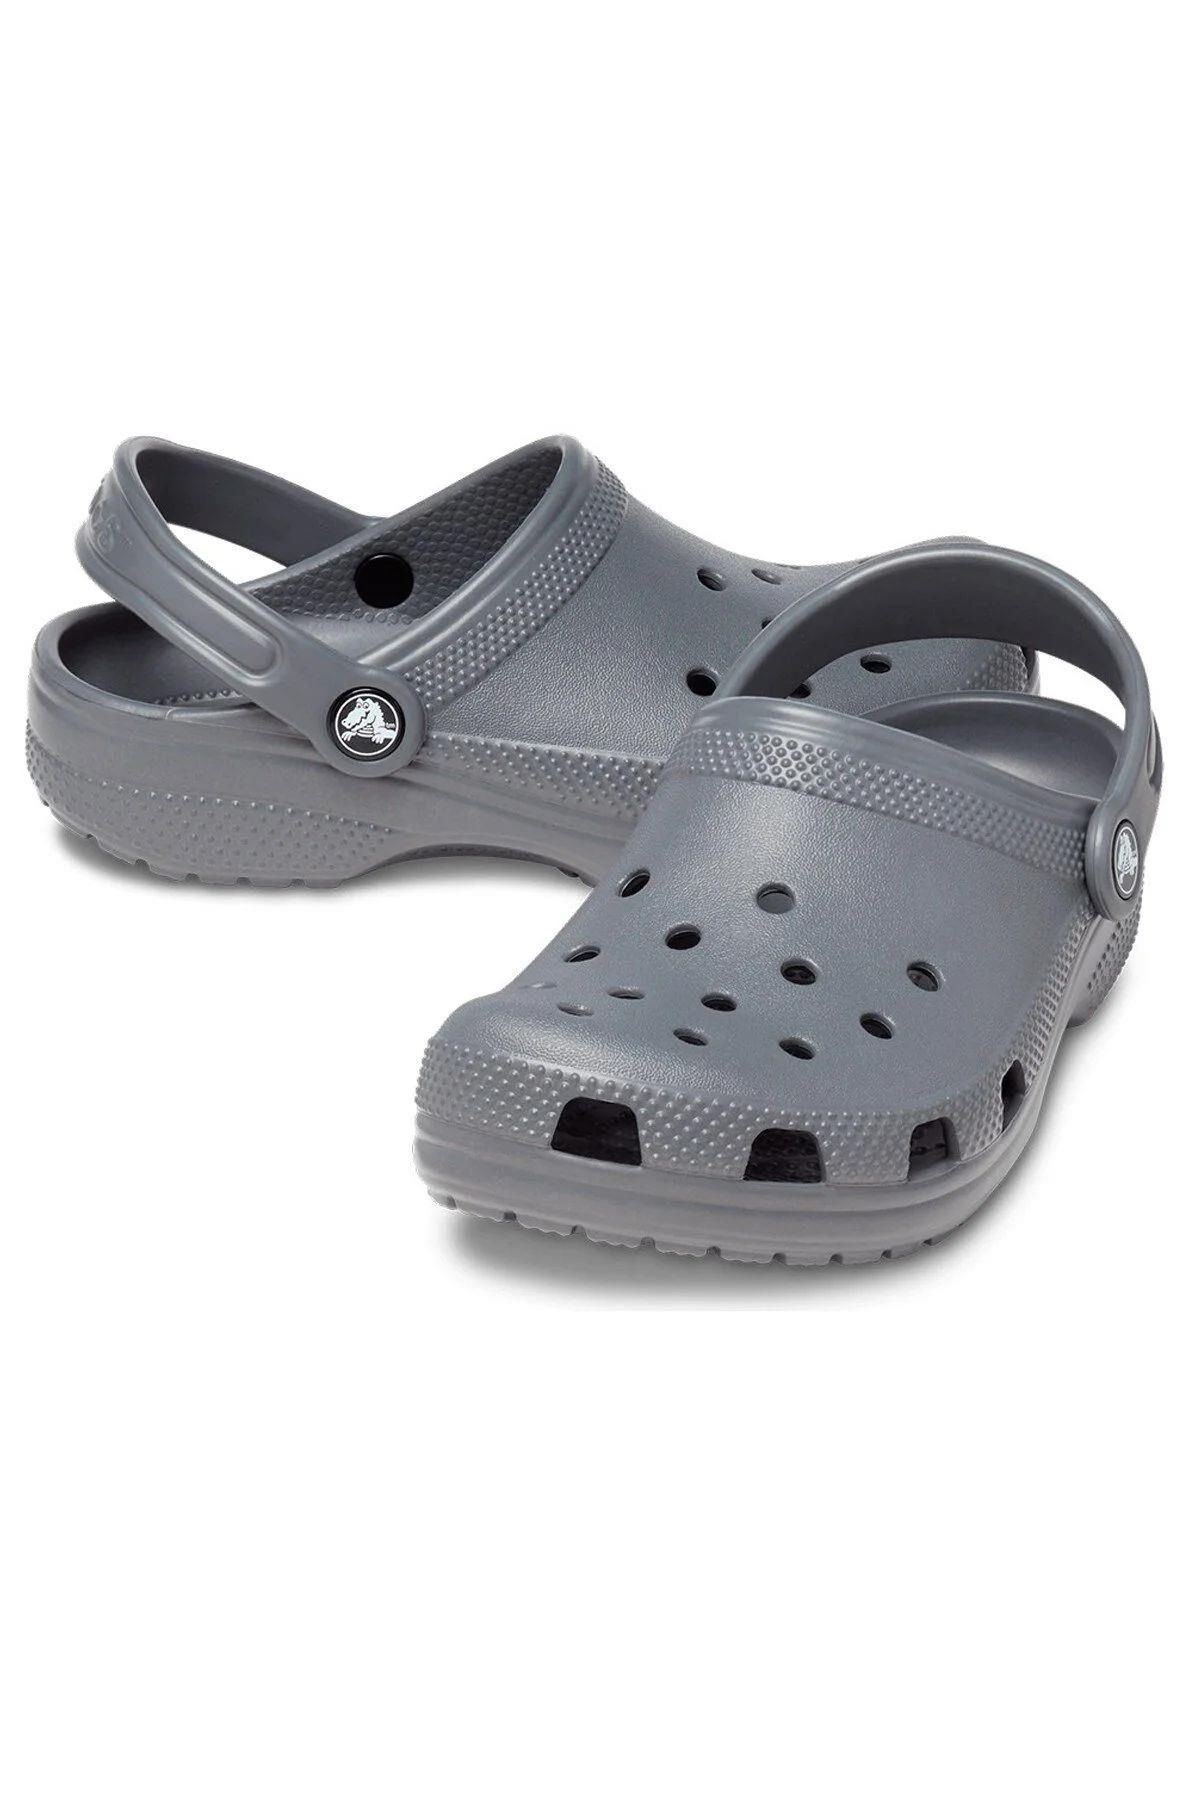 Crocs 206991-0da Classıc Clog Çocuk Terlik Sandalet